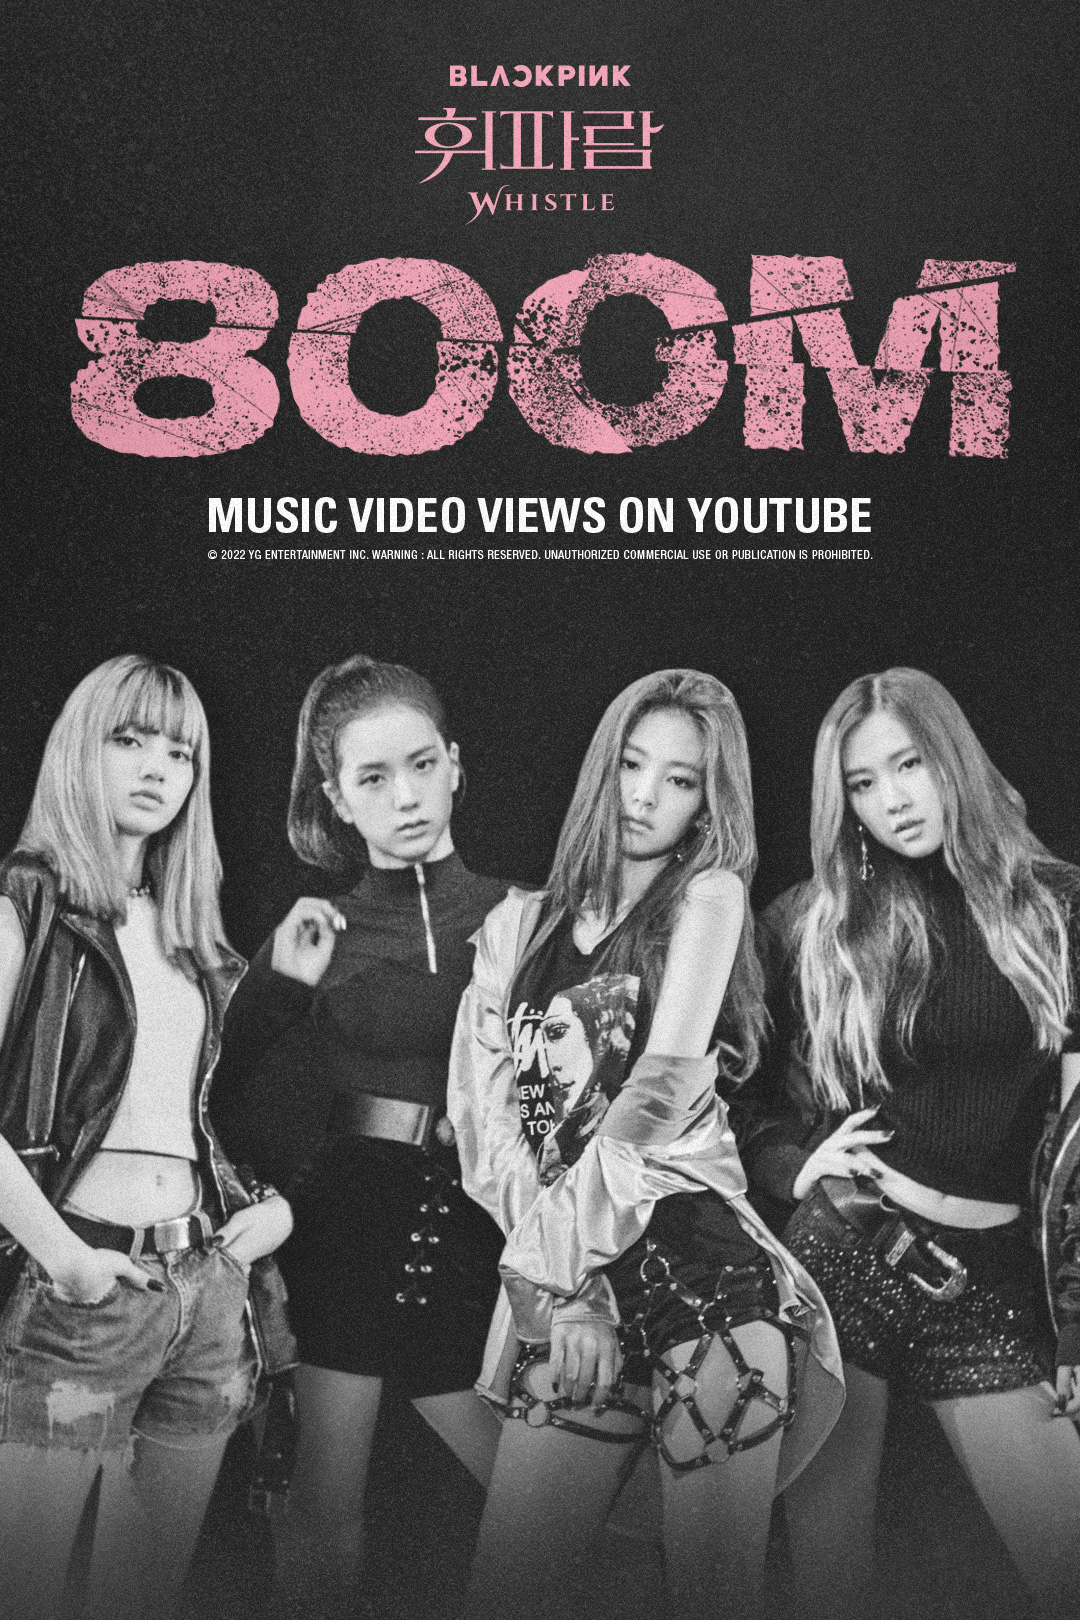 Poster chúc mừng MV “WHISTLE” của Blackpink đạt 800 triệu lượt xem. Ảnh: @ygent_official